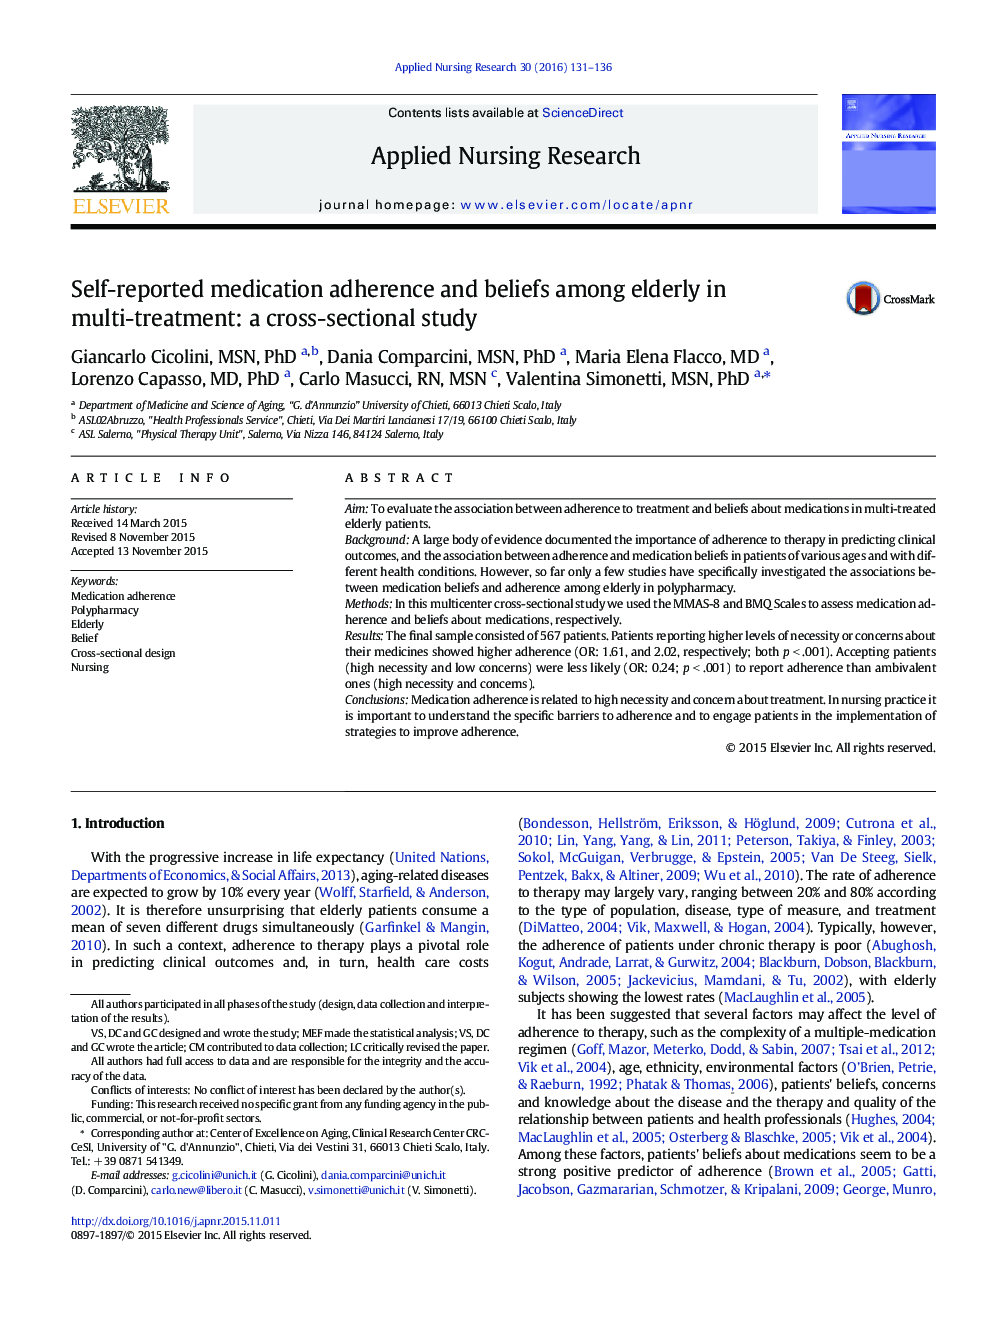 پایبندی دارویی خودگزارشی و باورها در میان سالمندان در درمان چنددارویی: یک مطالعه مقطعی